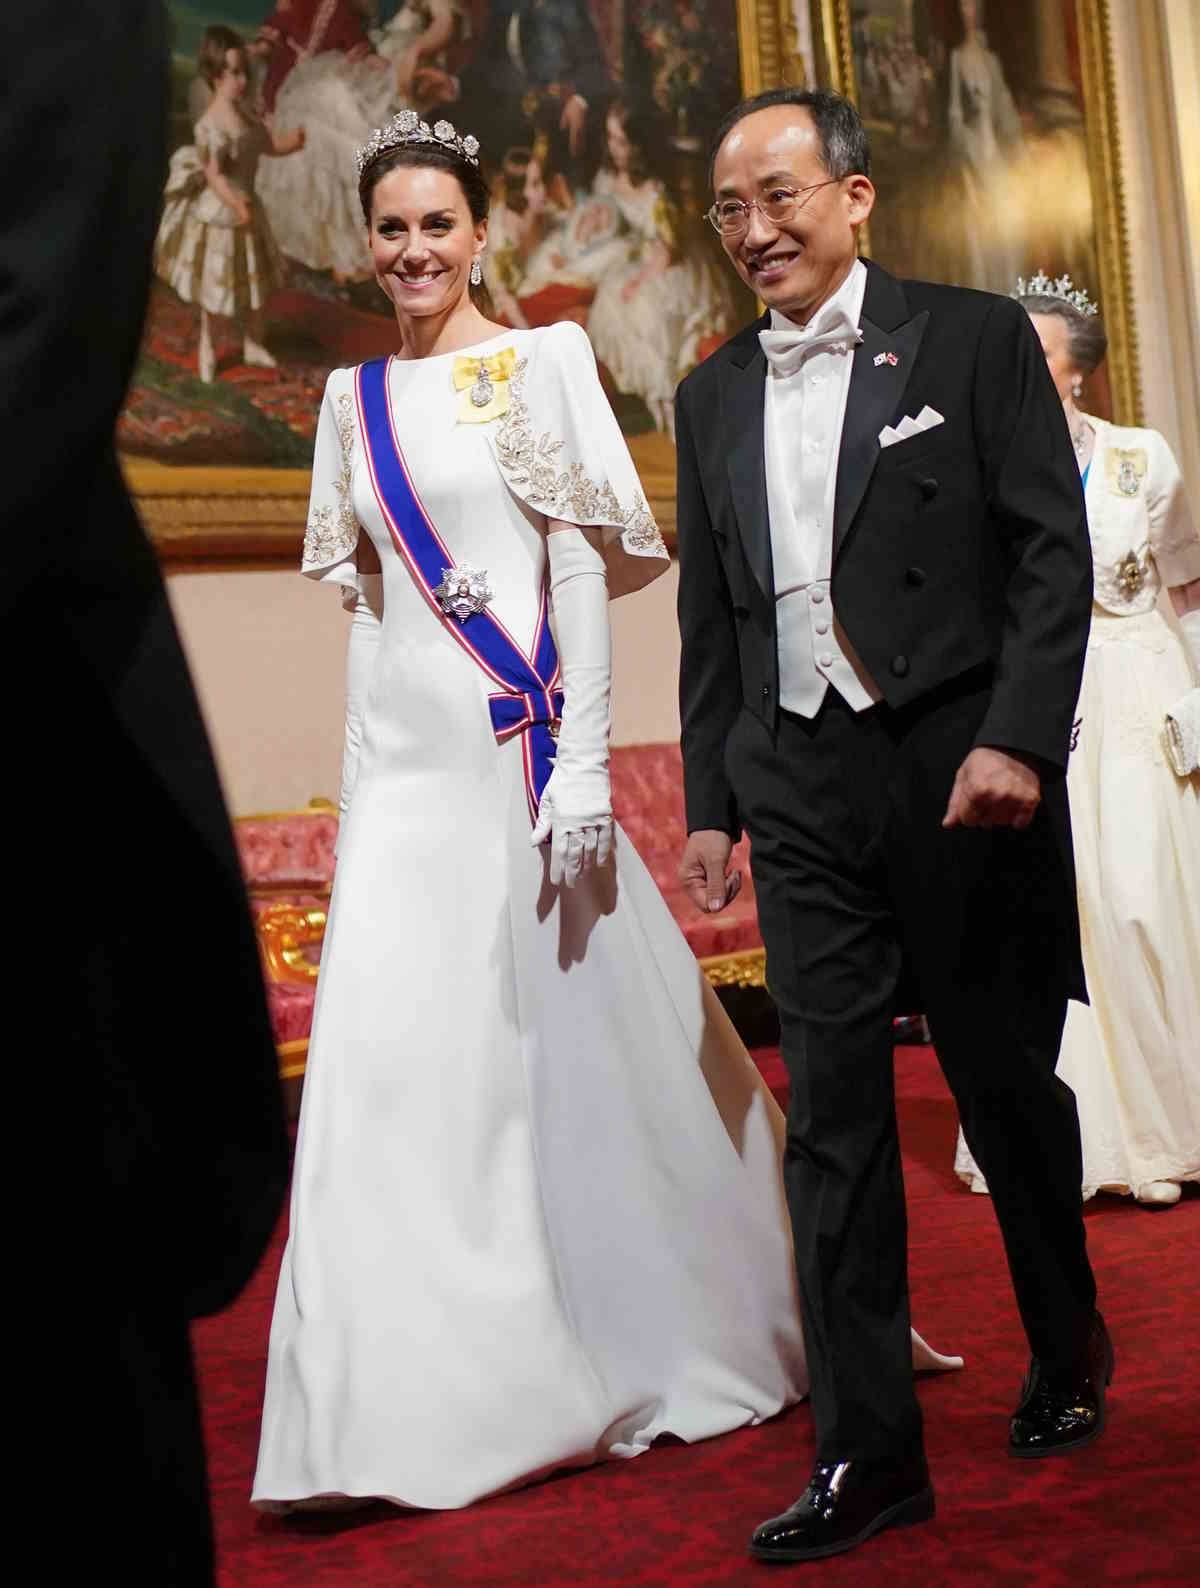 Księżna Kate w białej sukni i diamentowej tiarze. Księżna Kate olśniła w diamentowej tiarze z lat 20. XX wieku. A biała suknia Jenny Packham należy do jej ulubionych kreacji.